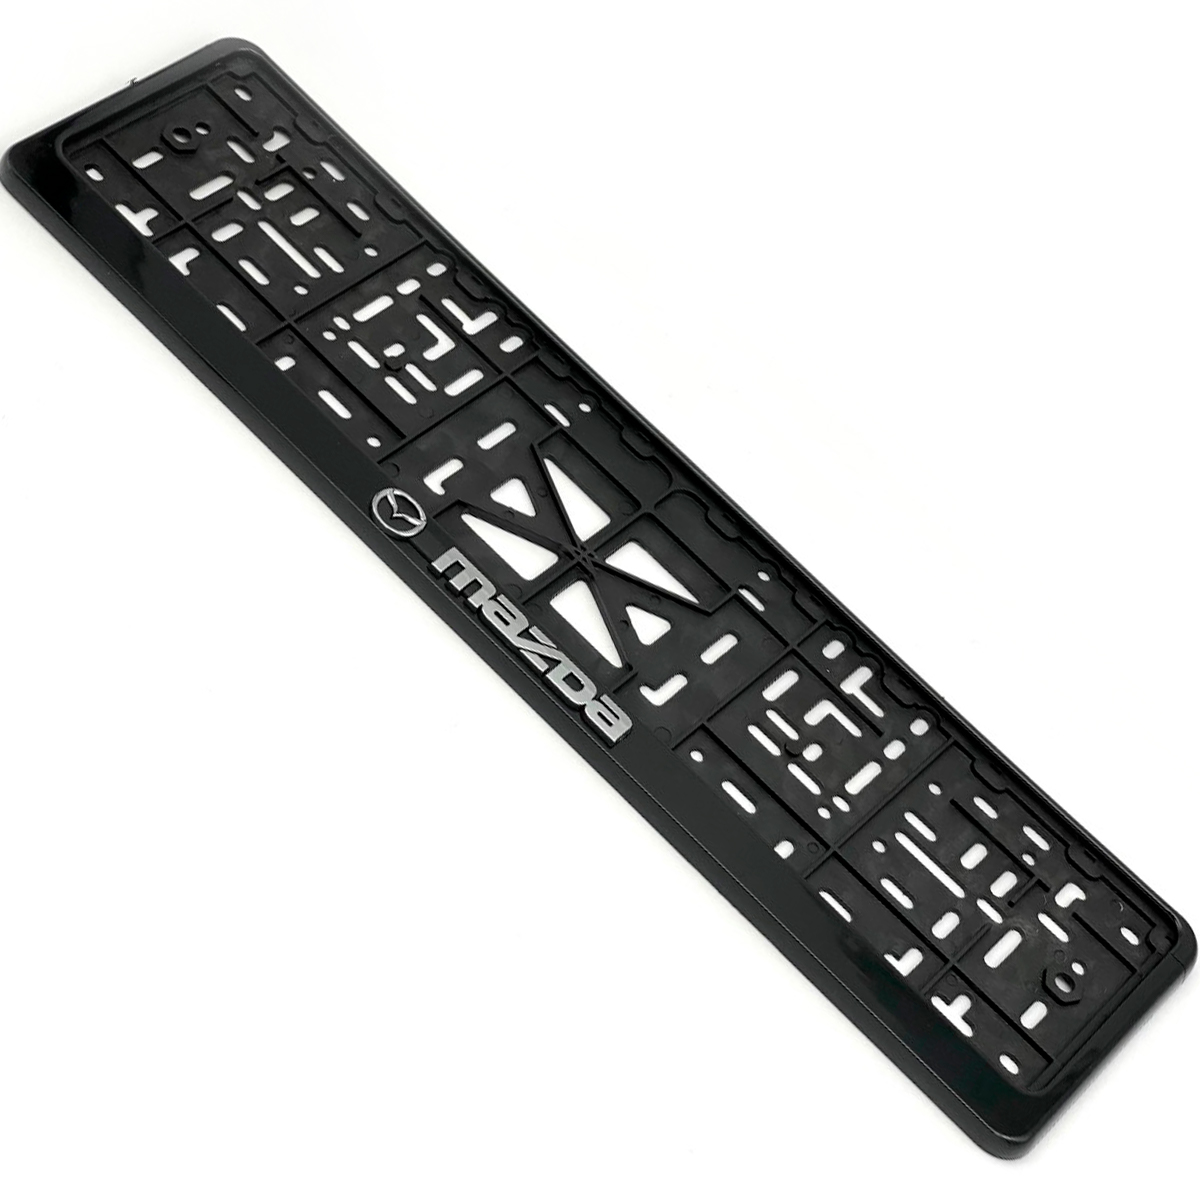 Рамка номерного знака EZID-AUTO стандарт MAZDA черная, ABS-пластик, 1шт